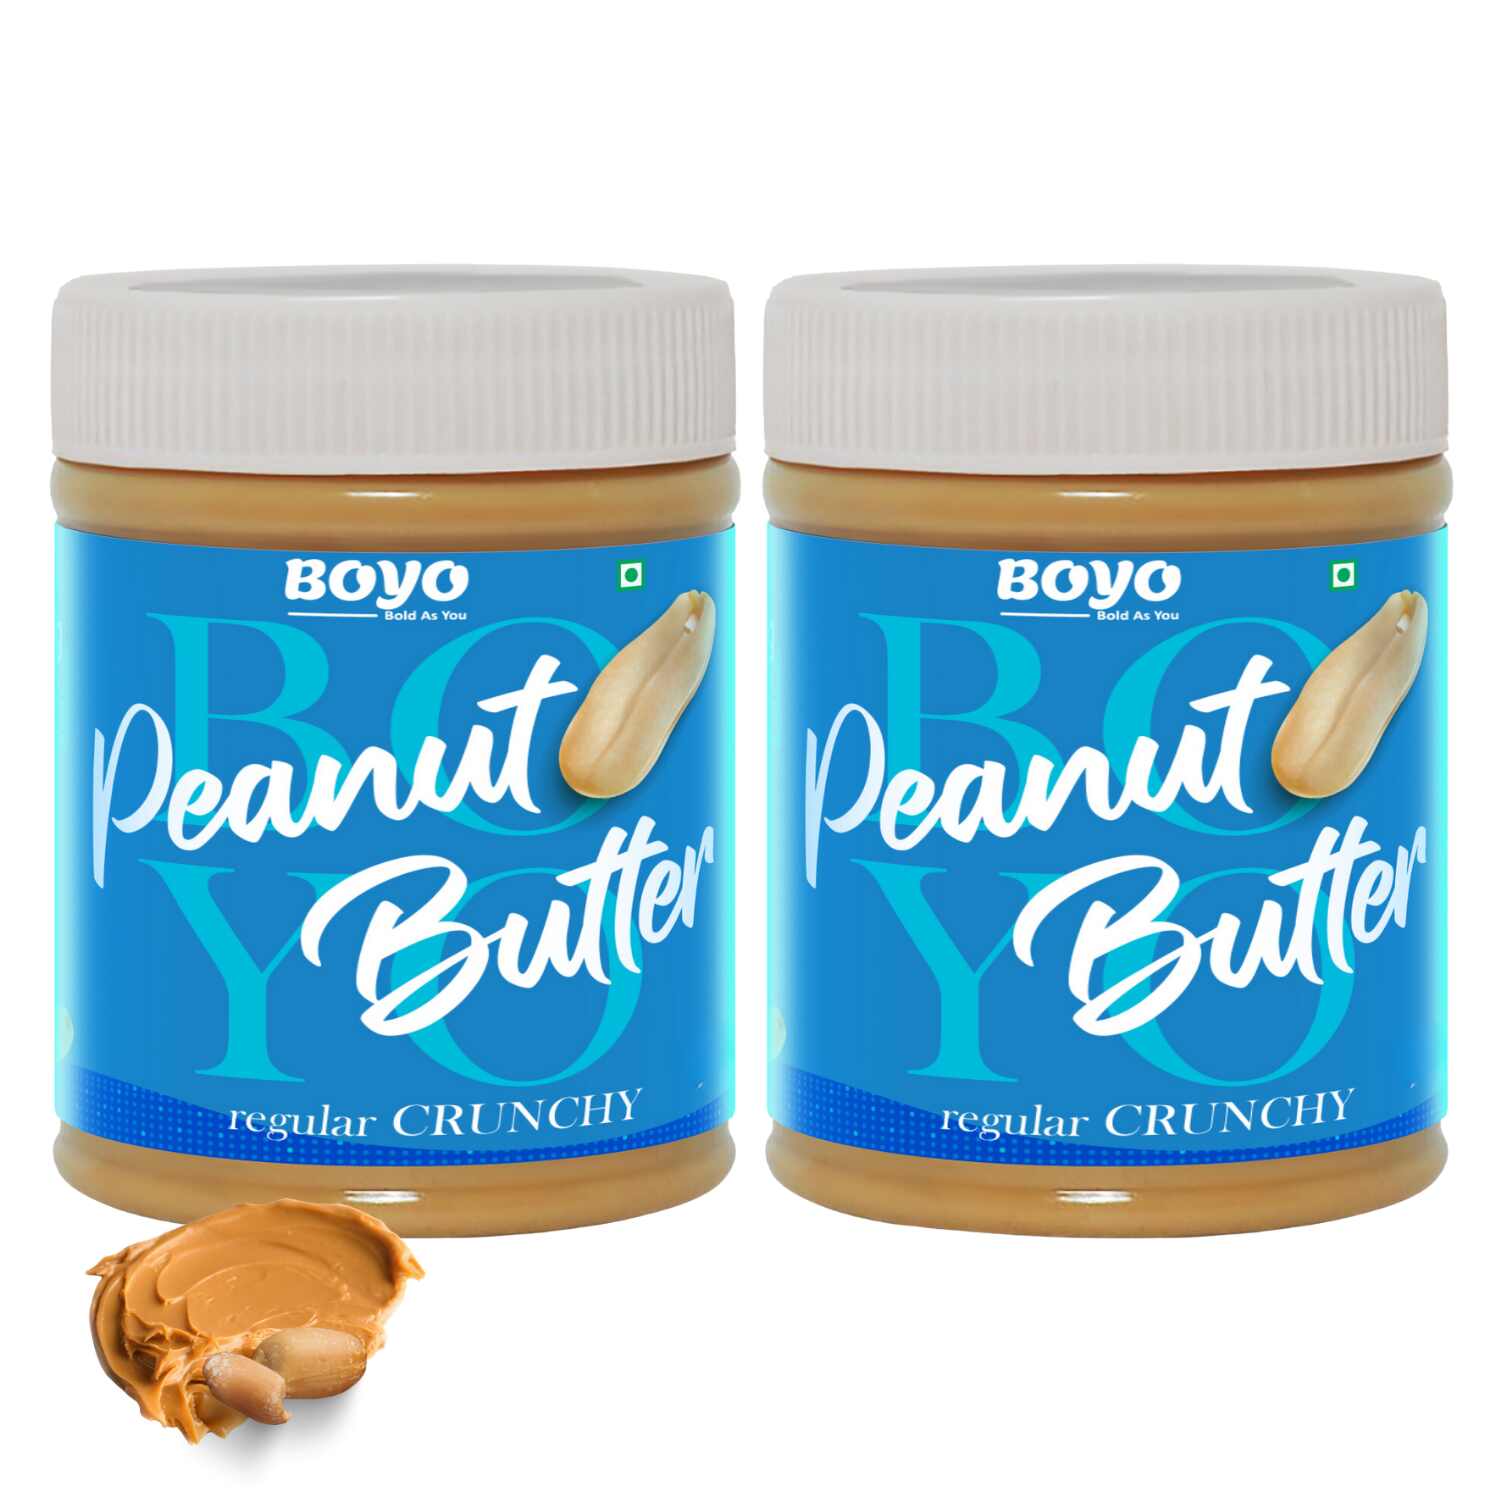 Peanut Butter Combo Regular Crunchy 340g Each - Pack of 2